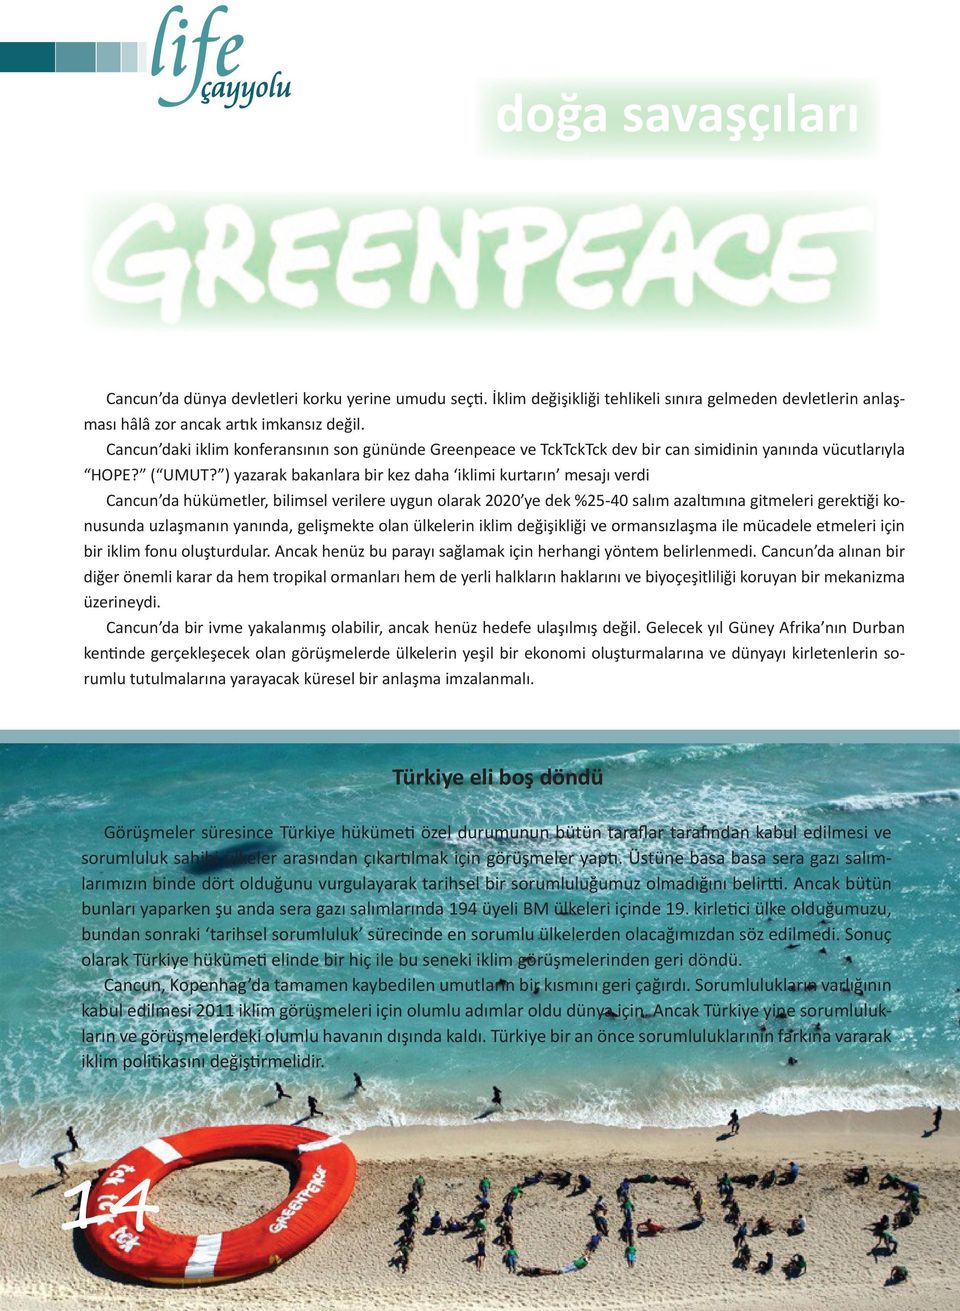 ) yazarak bakanlara bir kez daha iklimi kurtarın mesajı verdi Cancun da hükümetler, bilimsel verilere uygun olarak 2020 ye dek %25-40 salım azaltımına gitmeleri gerektiği konusunda uzlaşmanın